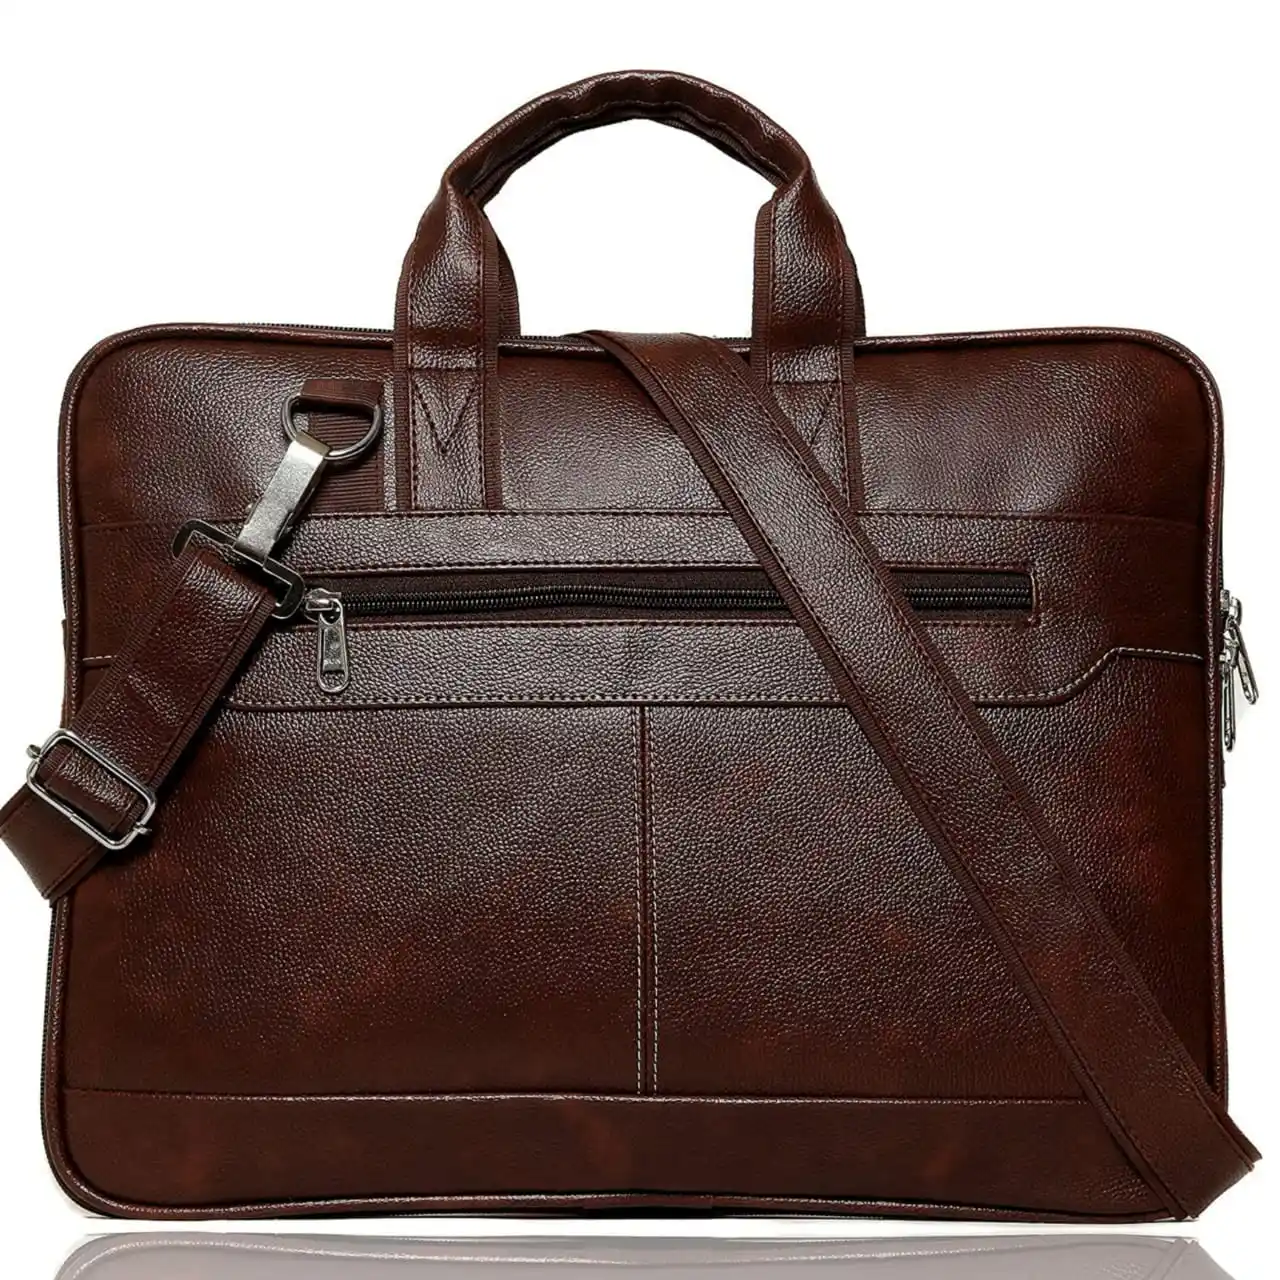 Men's carry-on document leather bag Vintage cross-body handbag Leather sling briefcase Laptop case Men's business bag